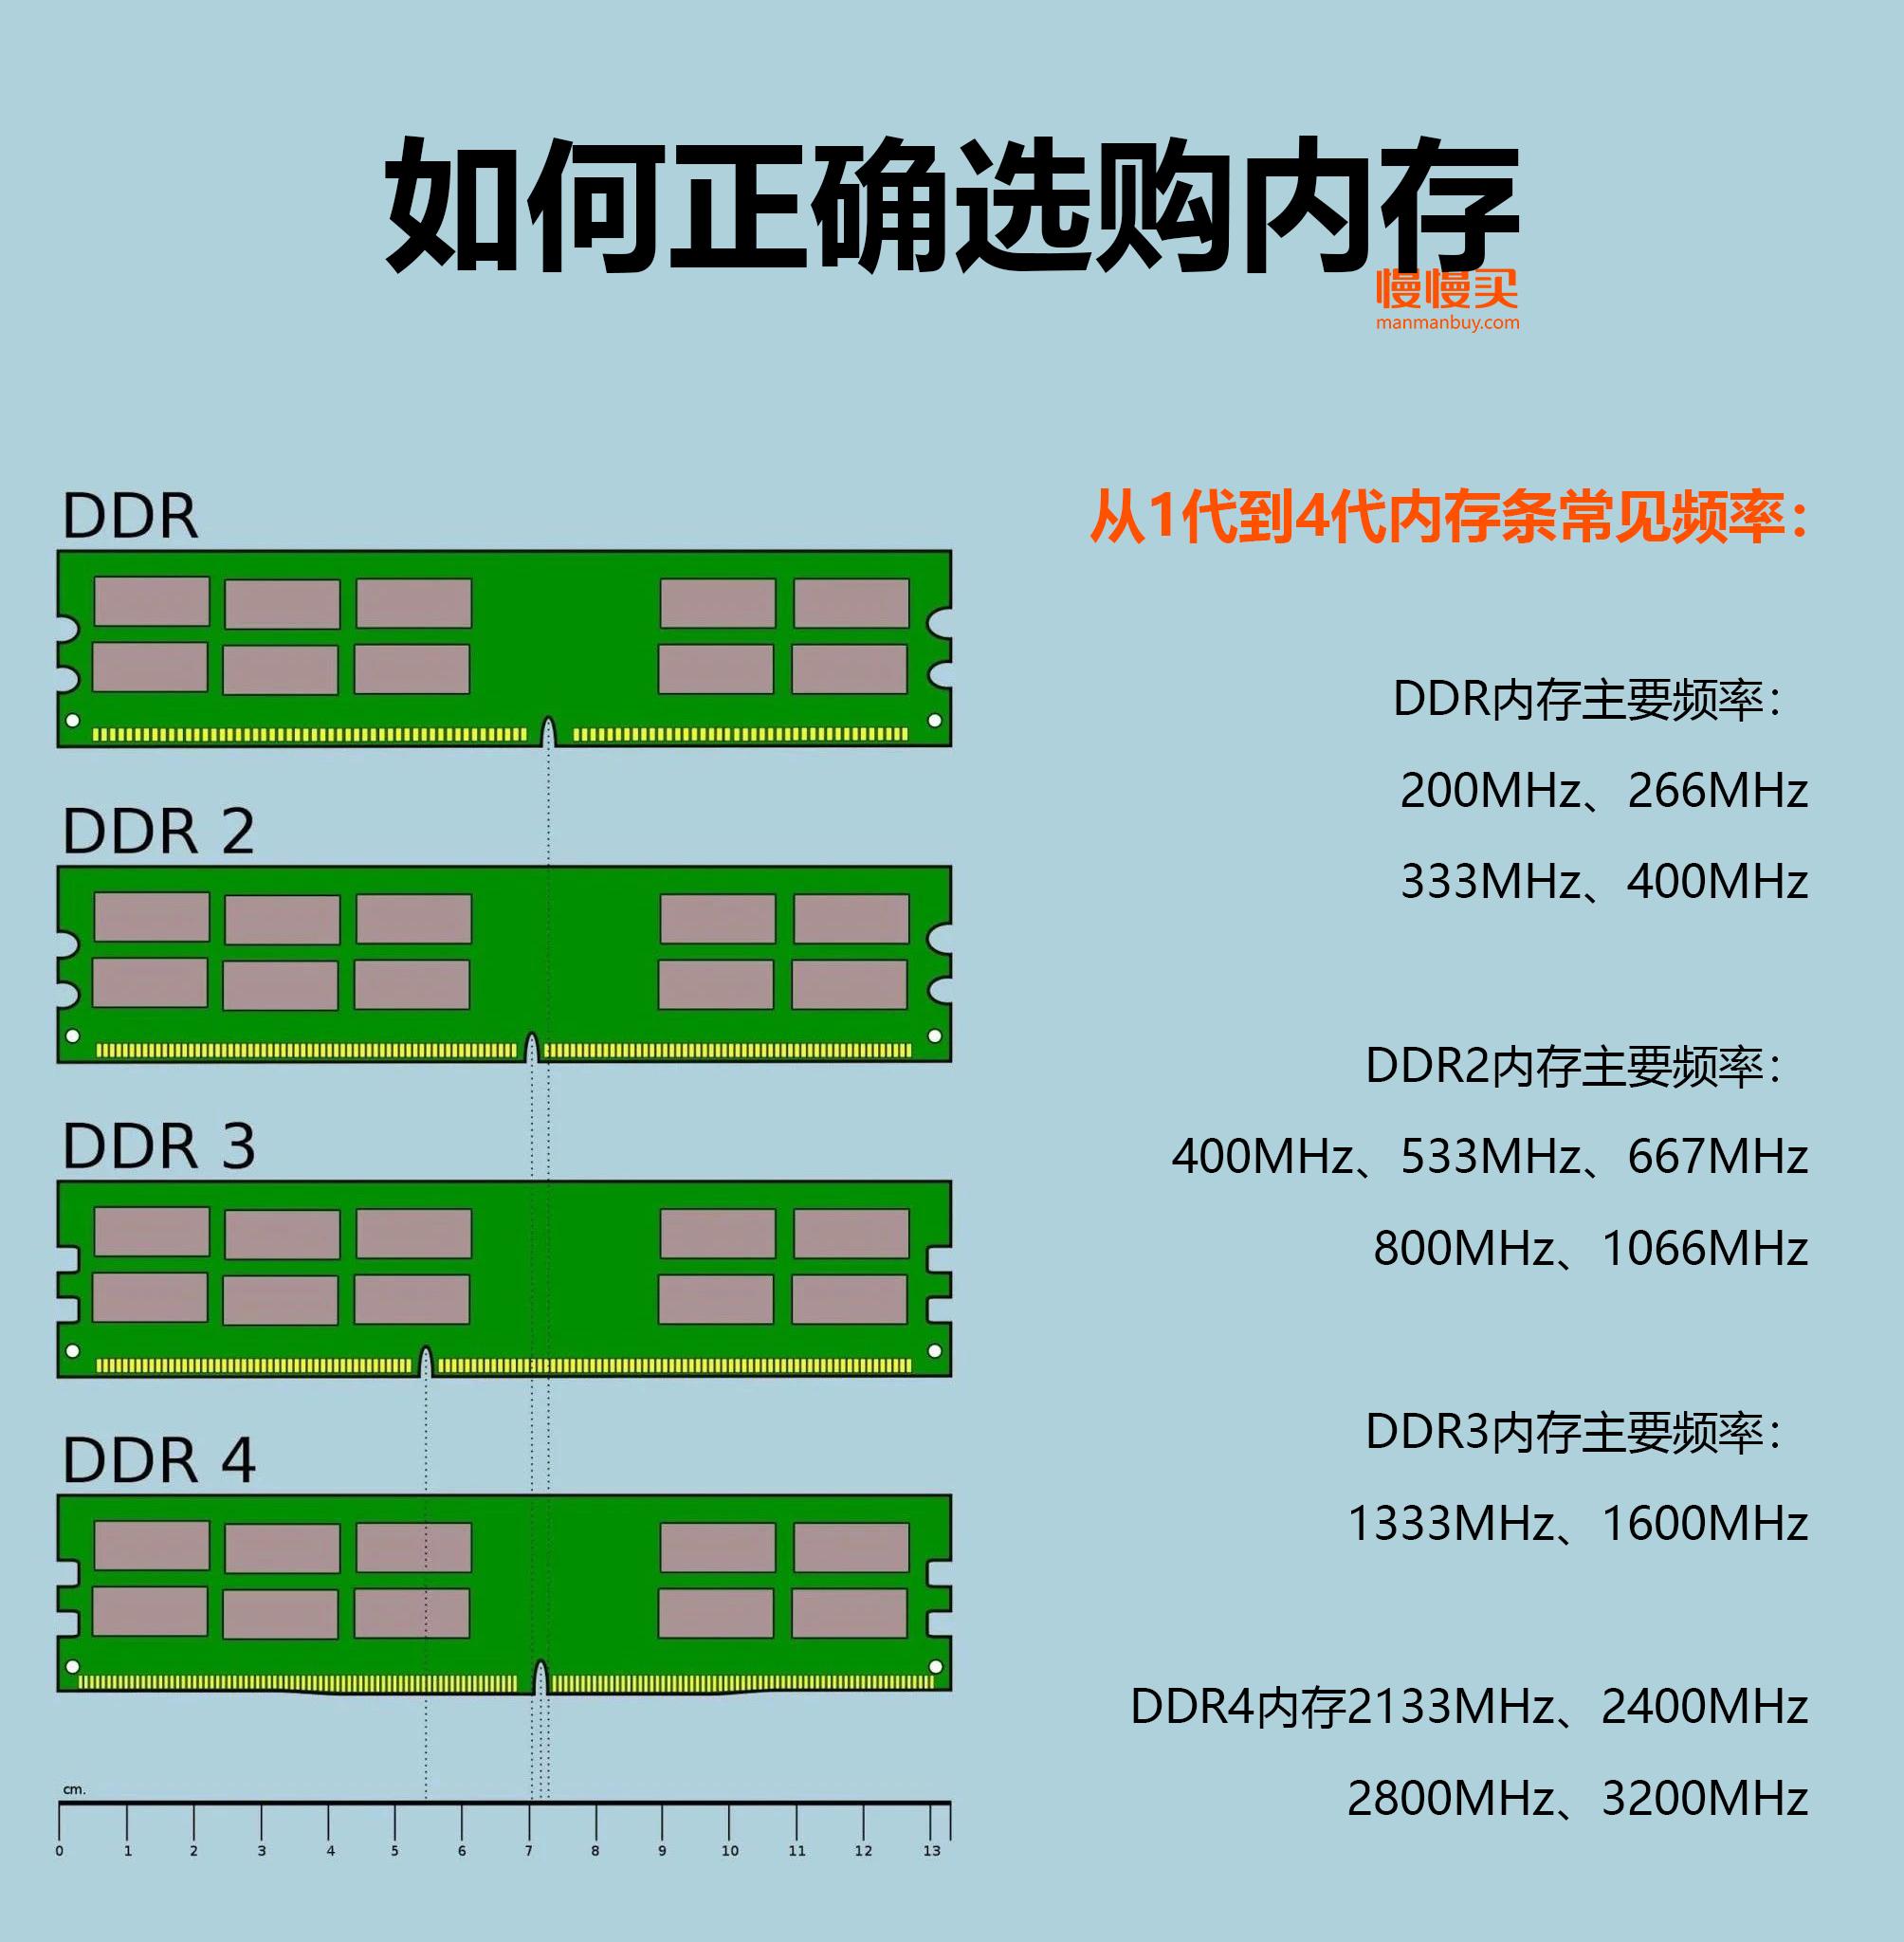 DDR4内存大揭秘：手机性能差异大到惊人  第6张